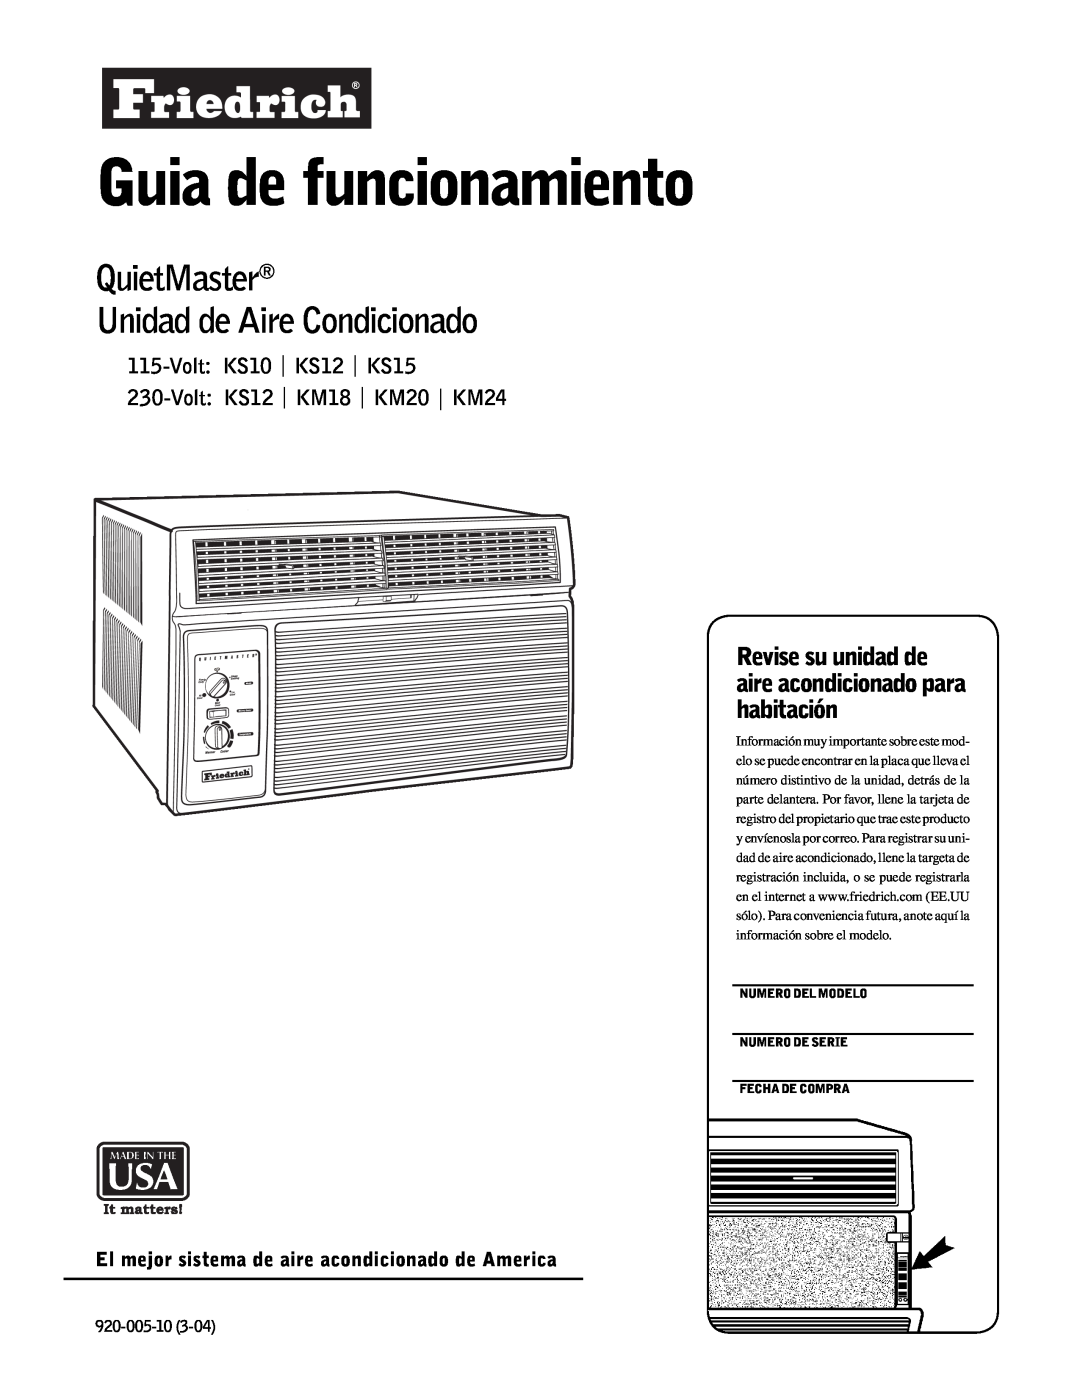 Friedrich KM20 manual Guia de funcionamiento, QuietMaster Unidad de Aire Condicionado, Volt KS10 KS12 KS15, 920-005-10 